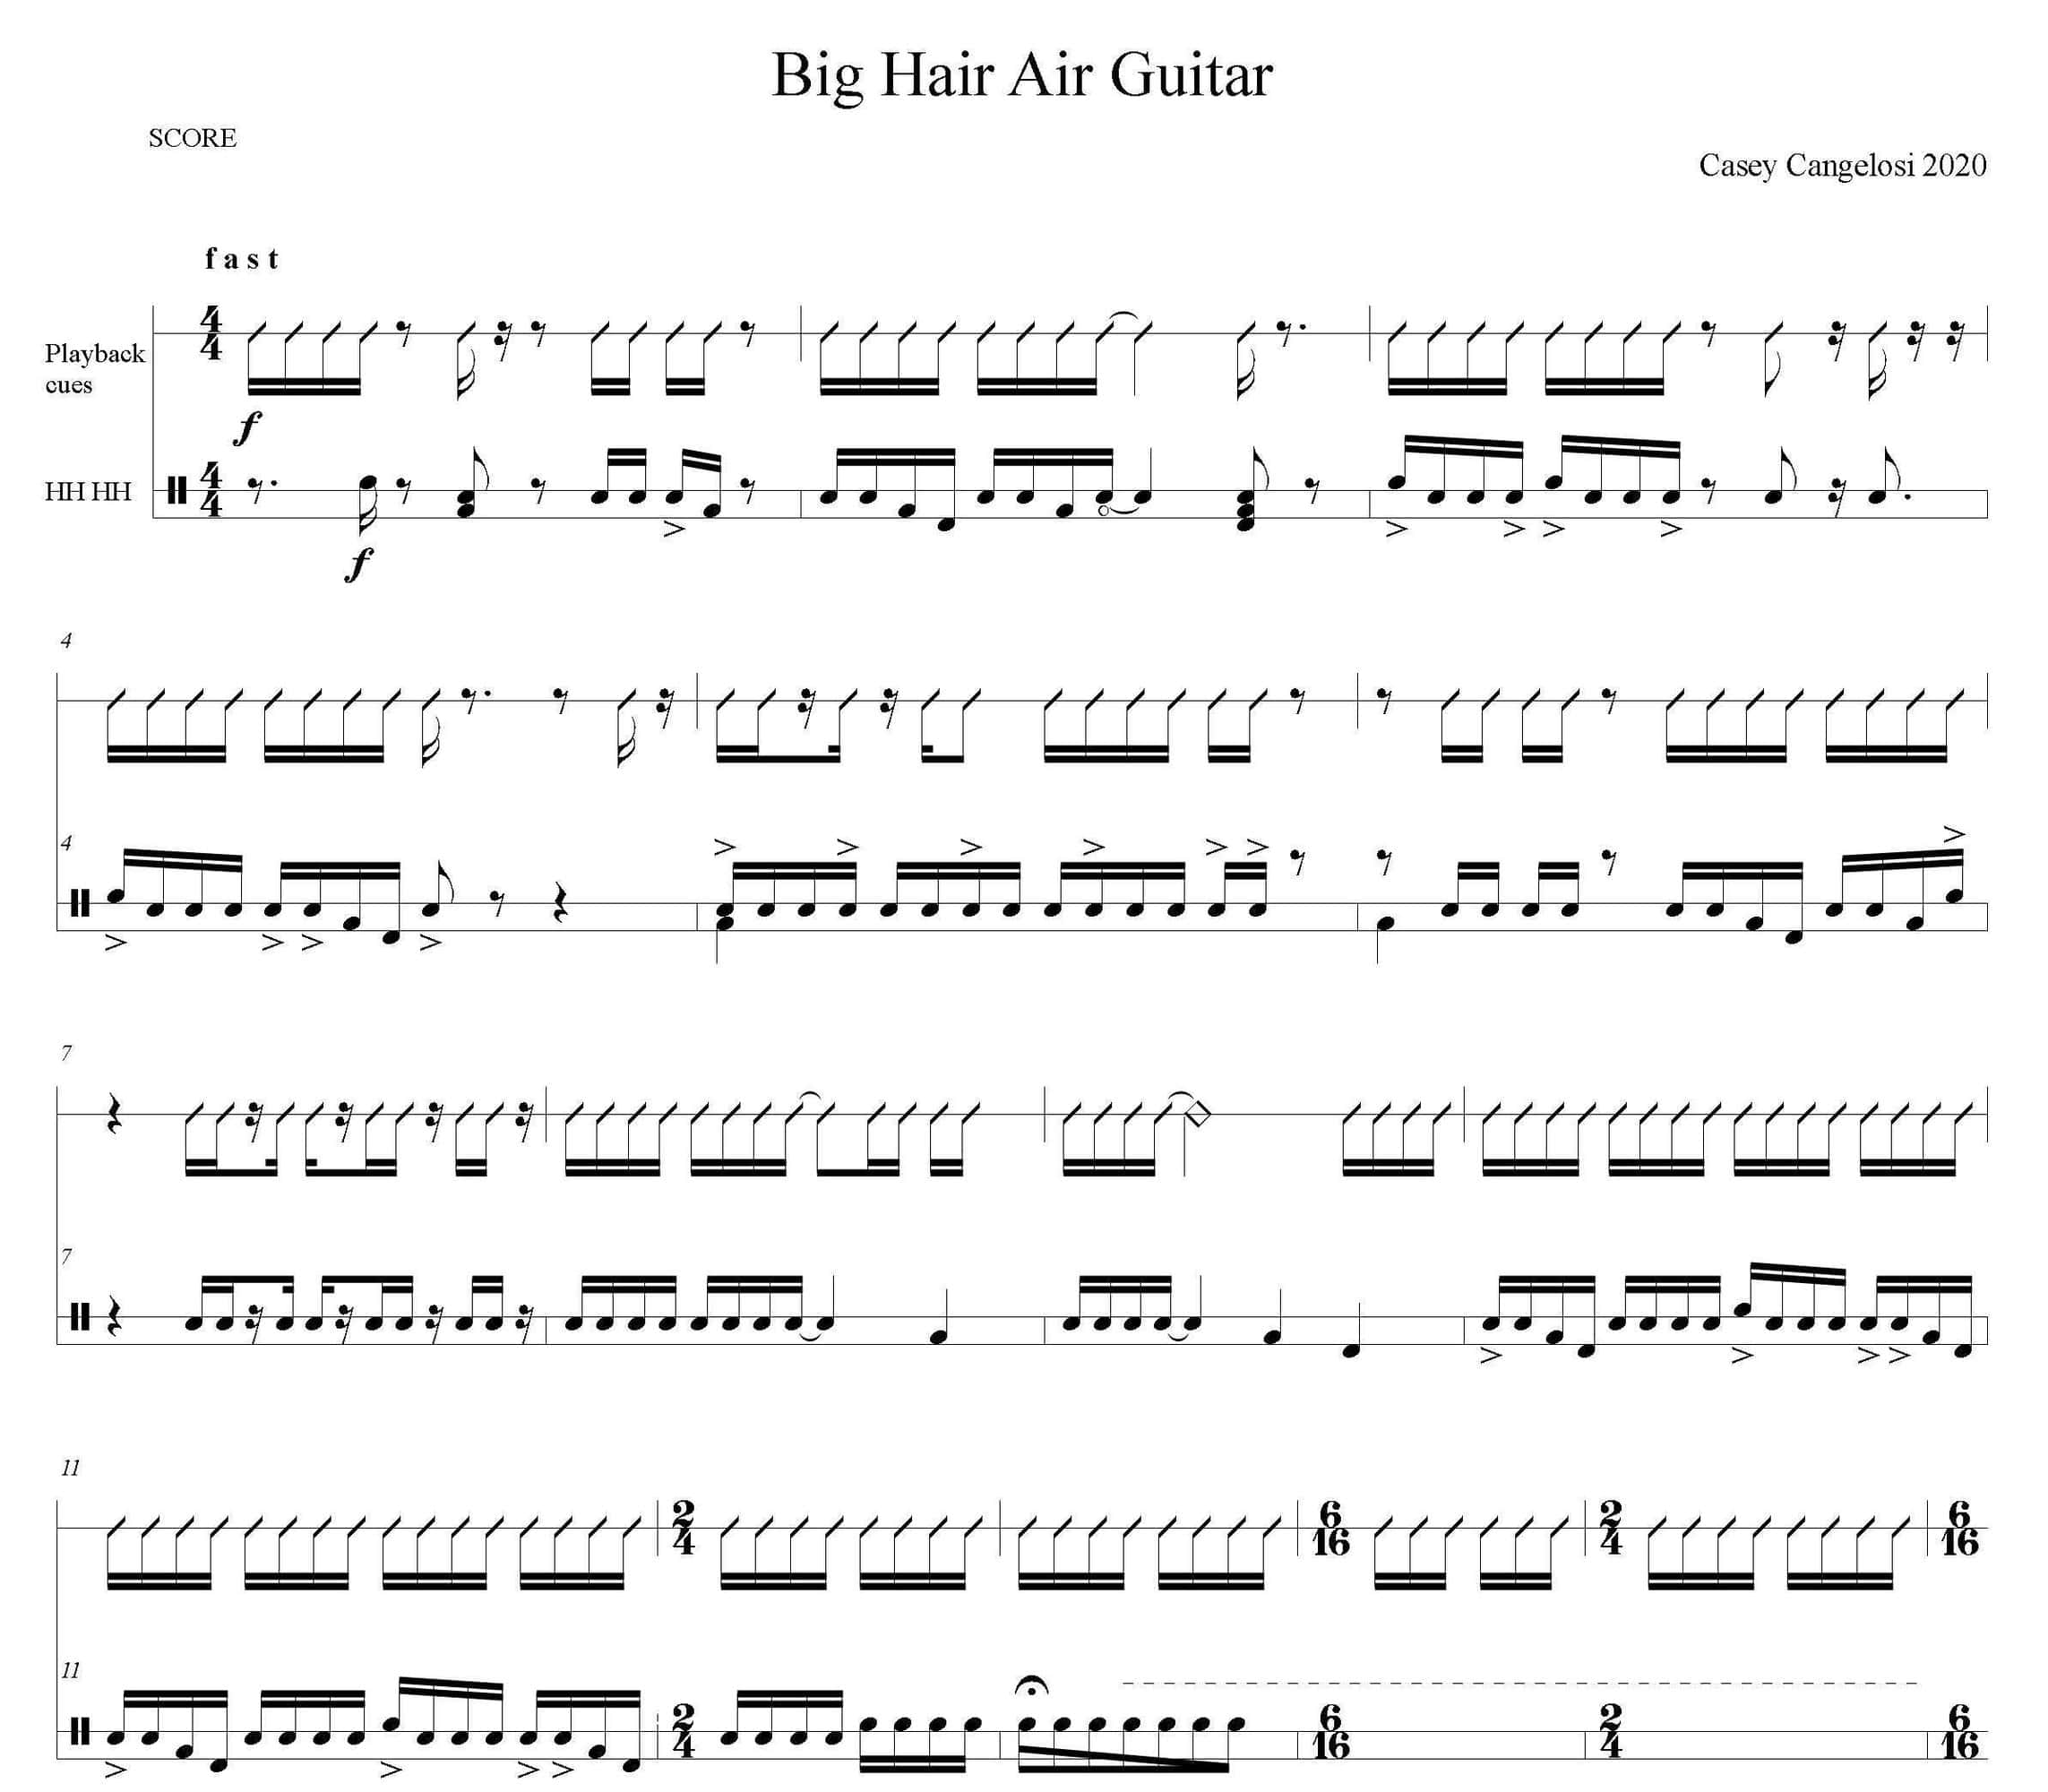 Big Hair Air Guitar by Casey Cangelosi